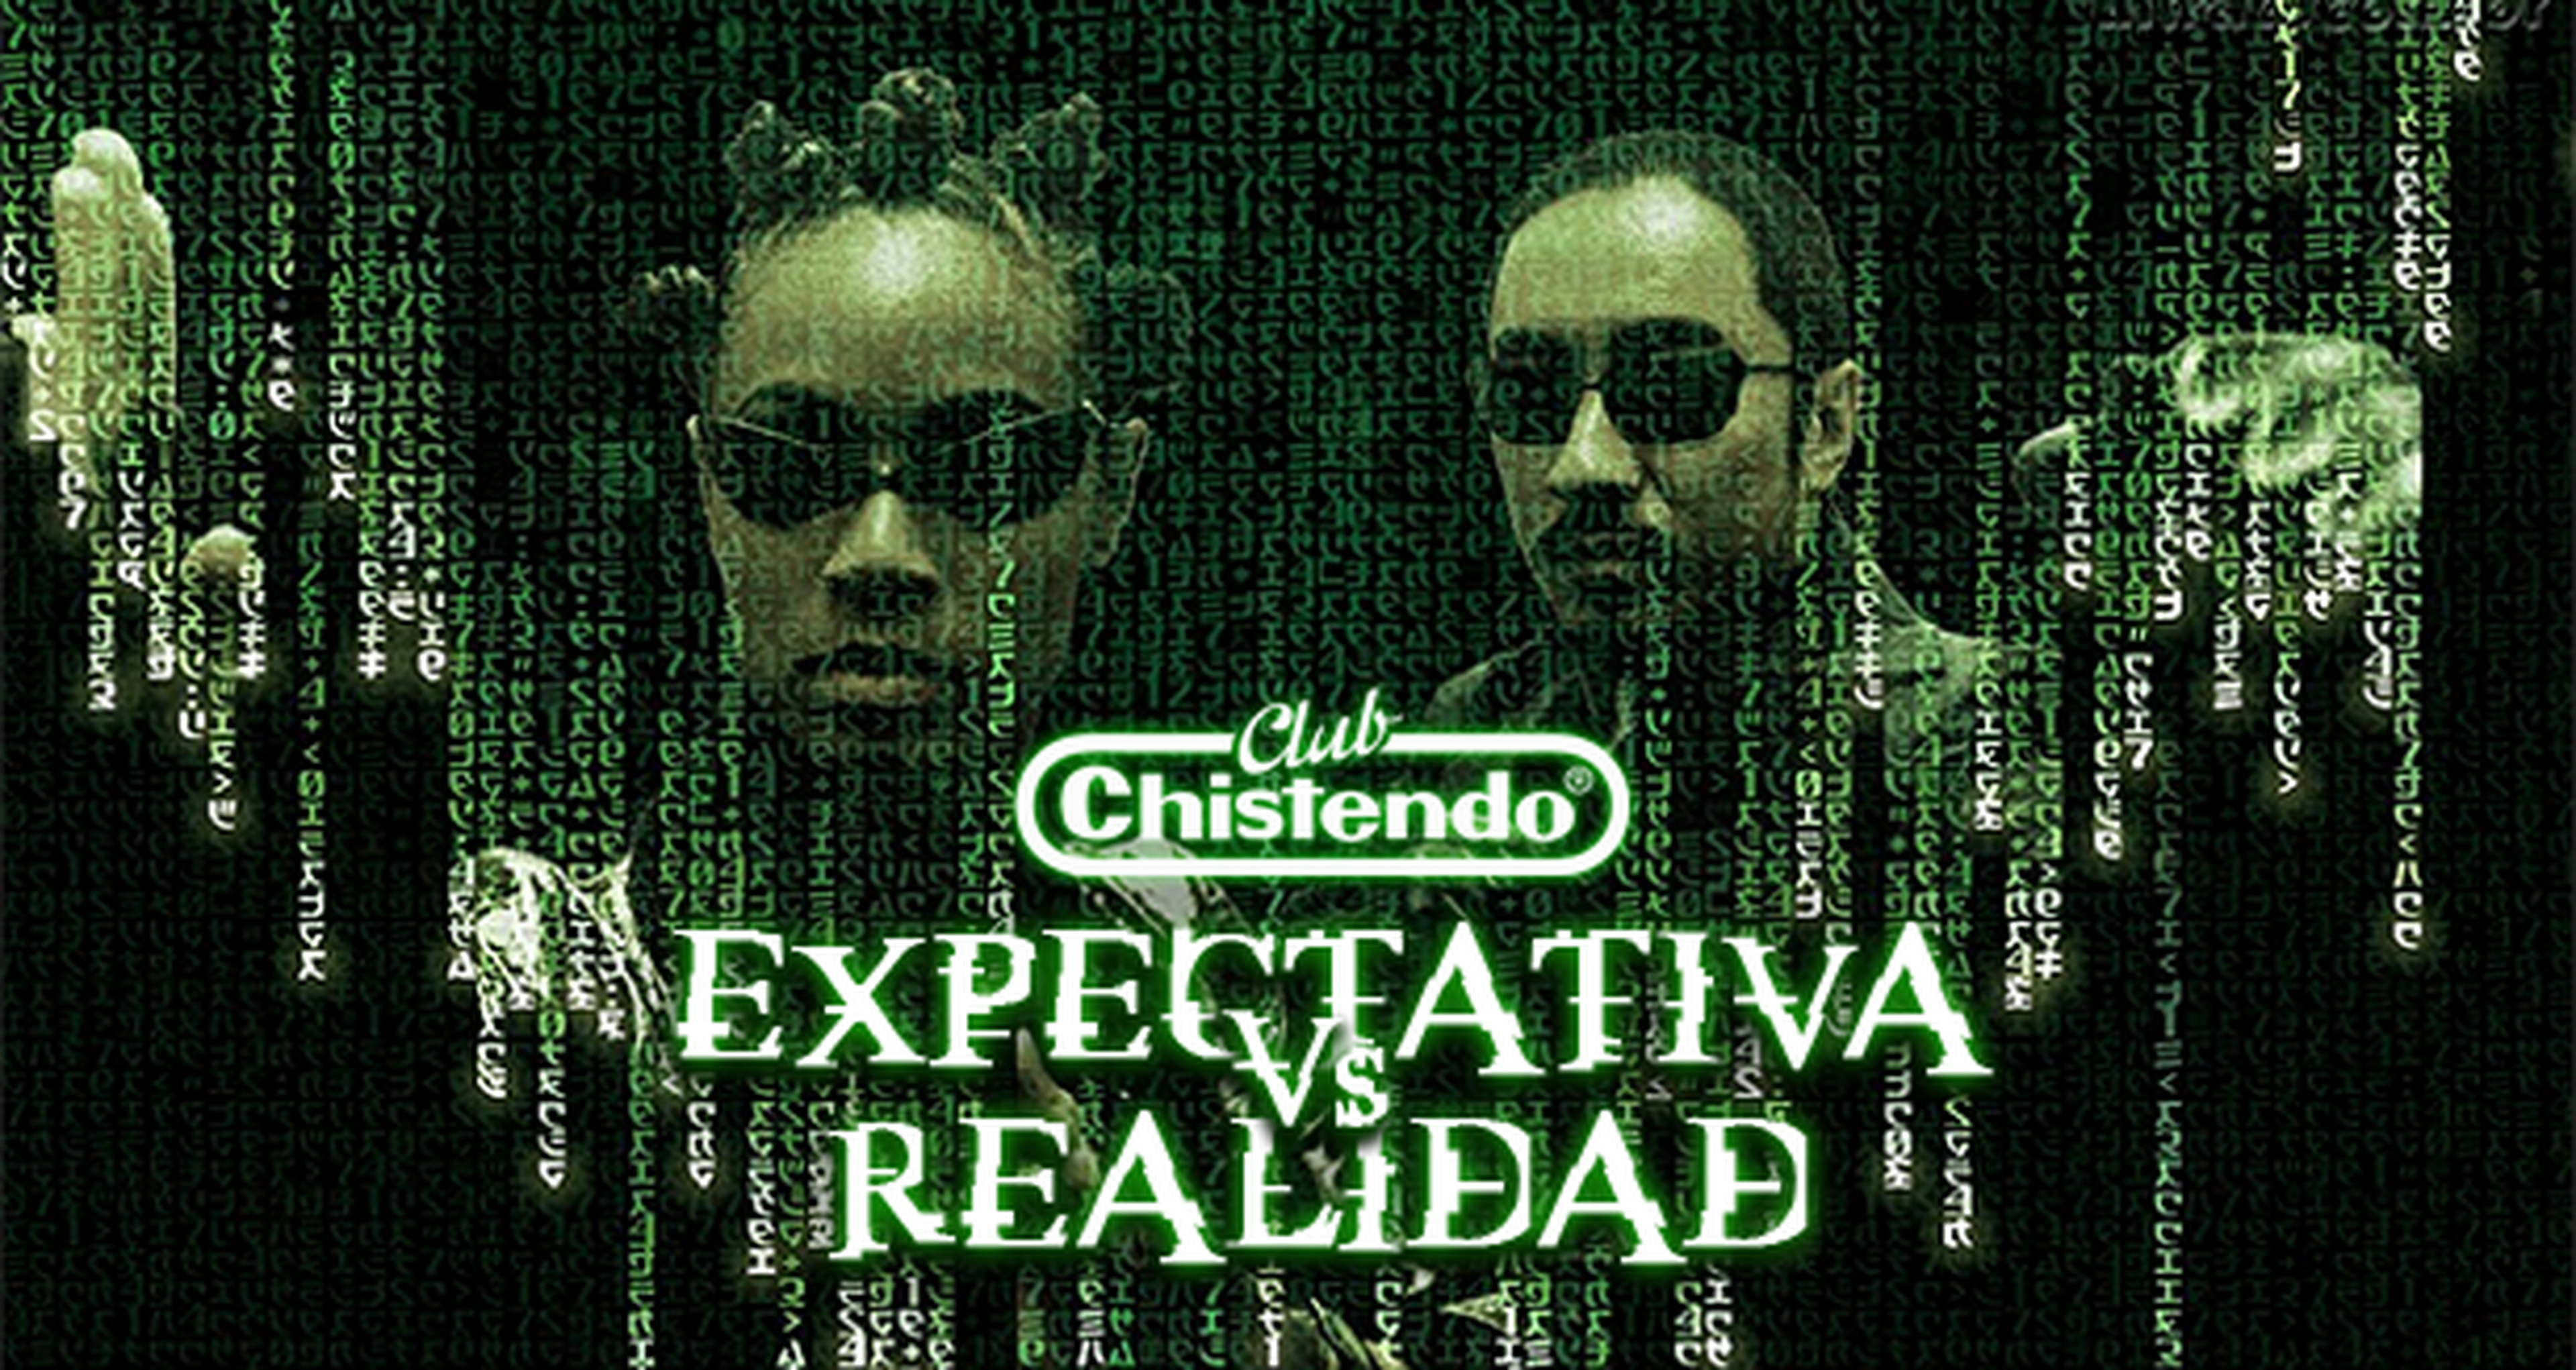 Club Chistendo: Expectativa Vs. Realidad. Round 1: Hype!